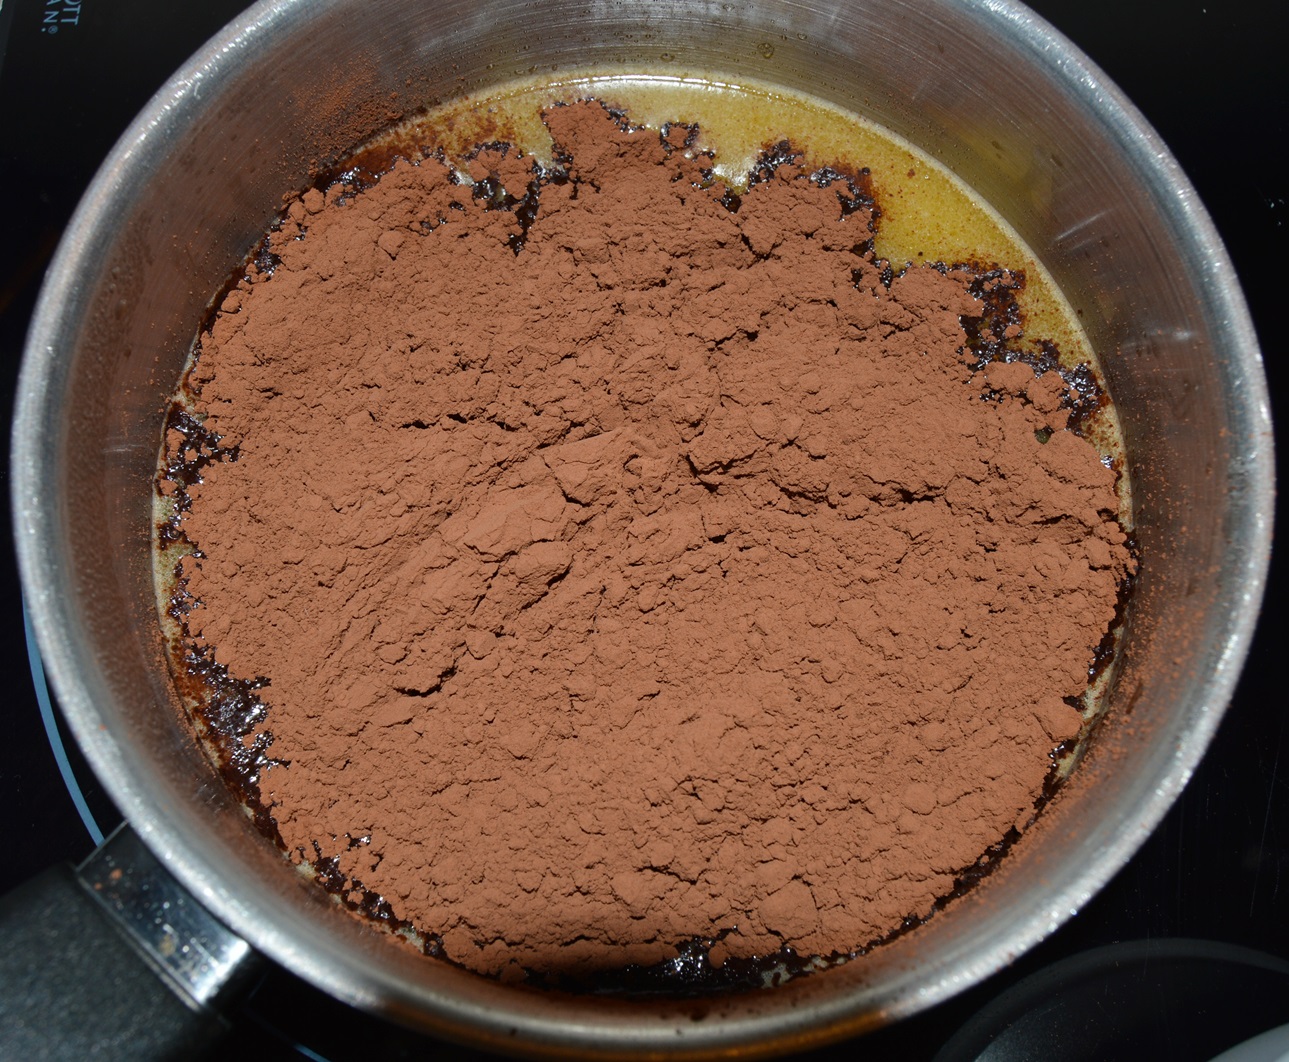 Añadiendo el cacao en polvo. Aroma de chocolate